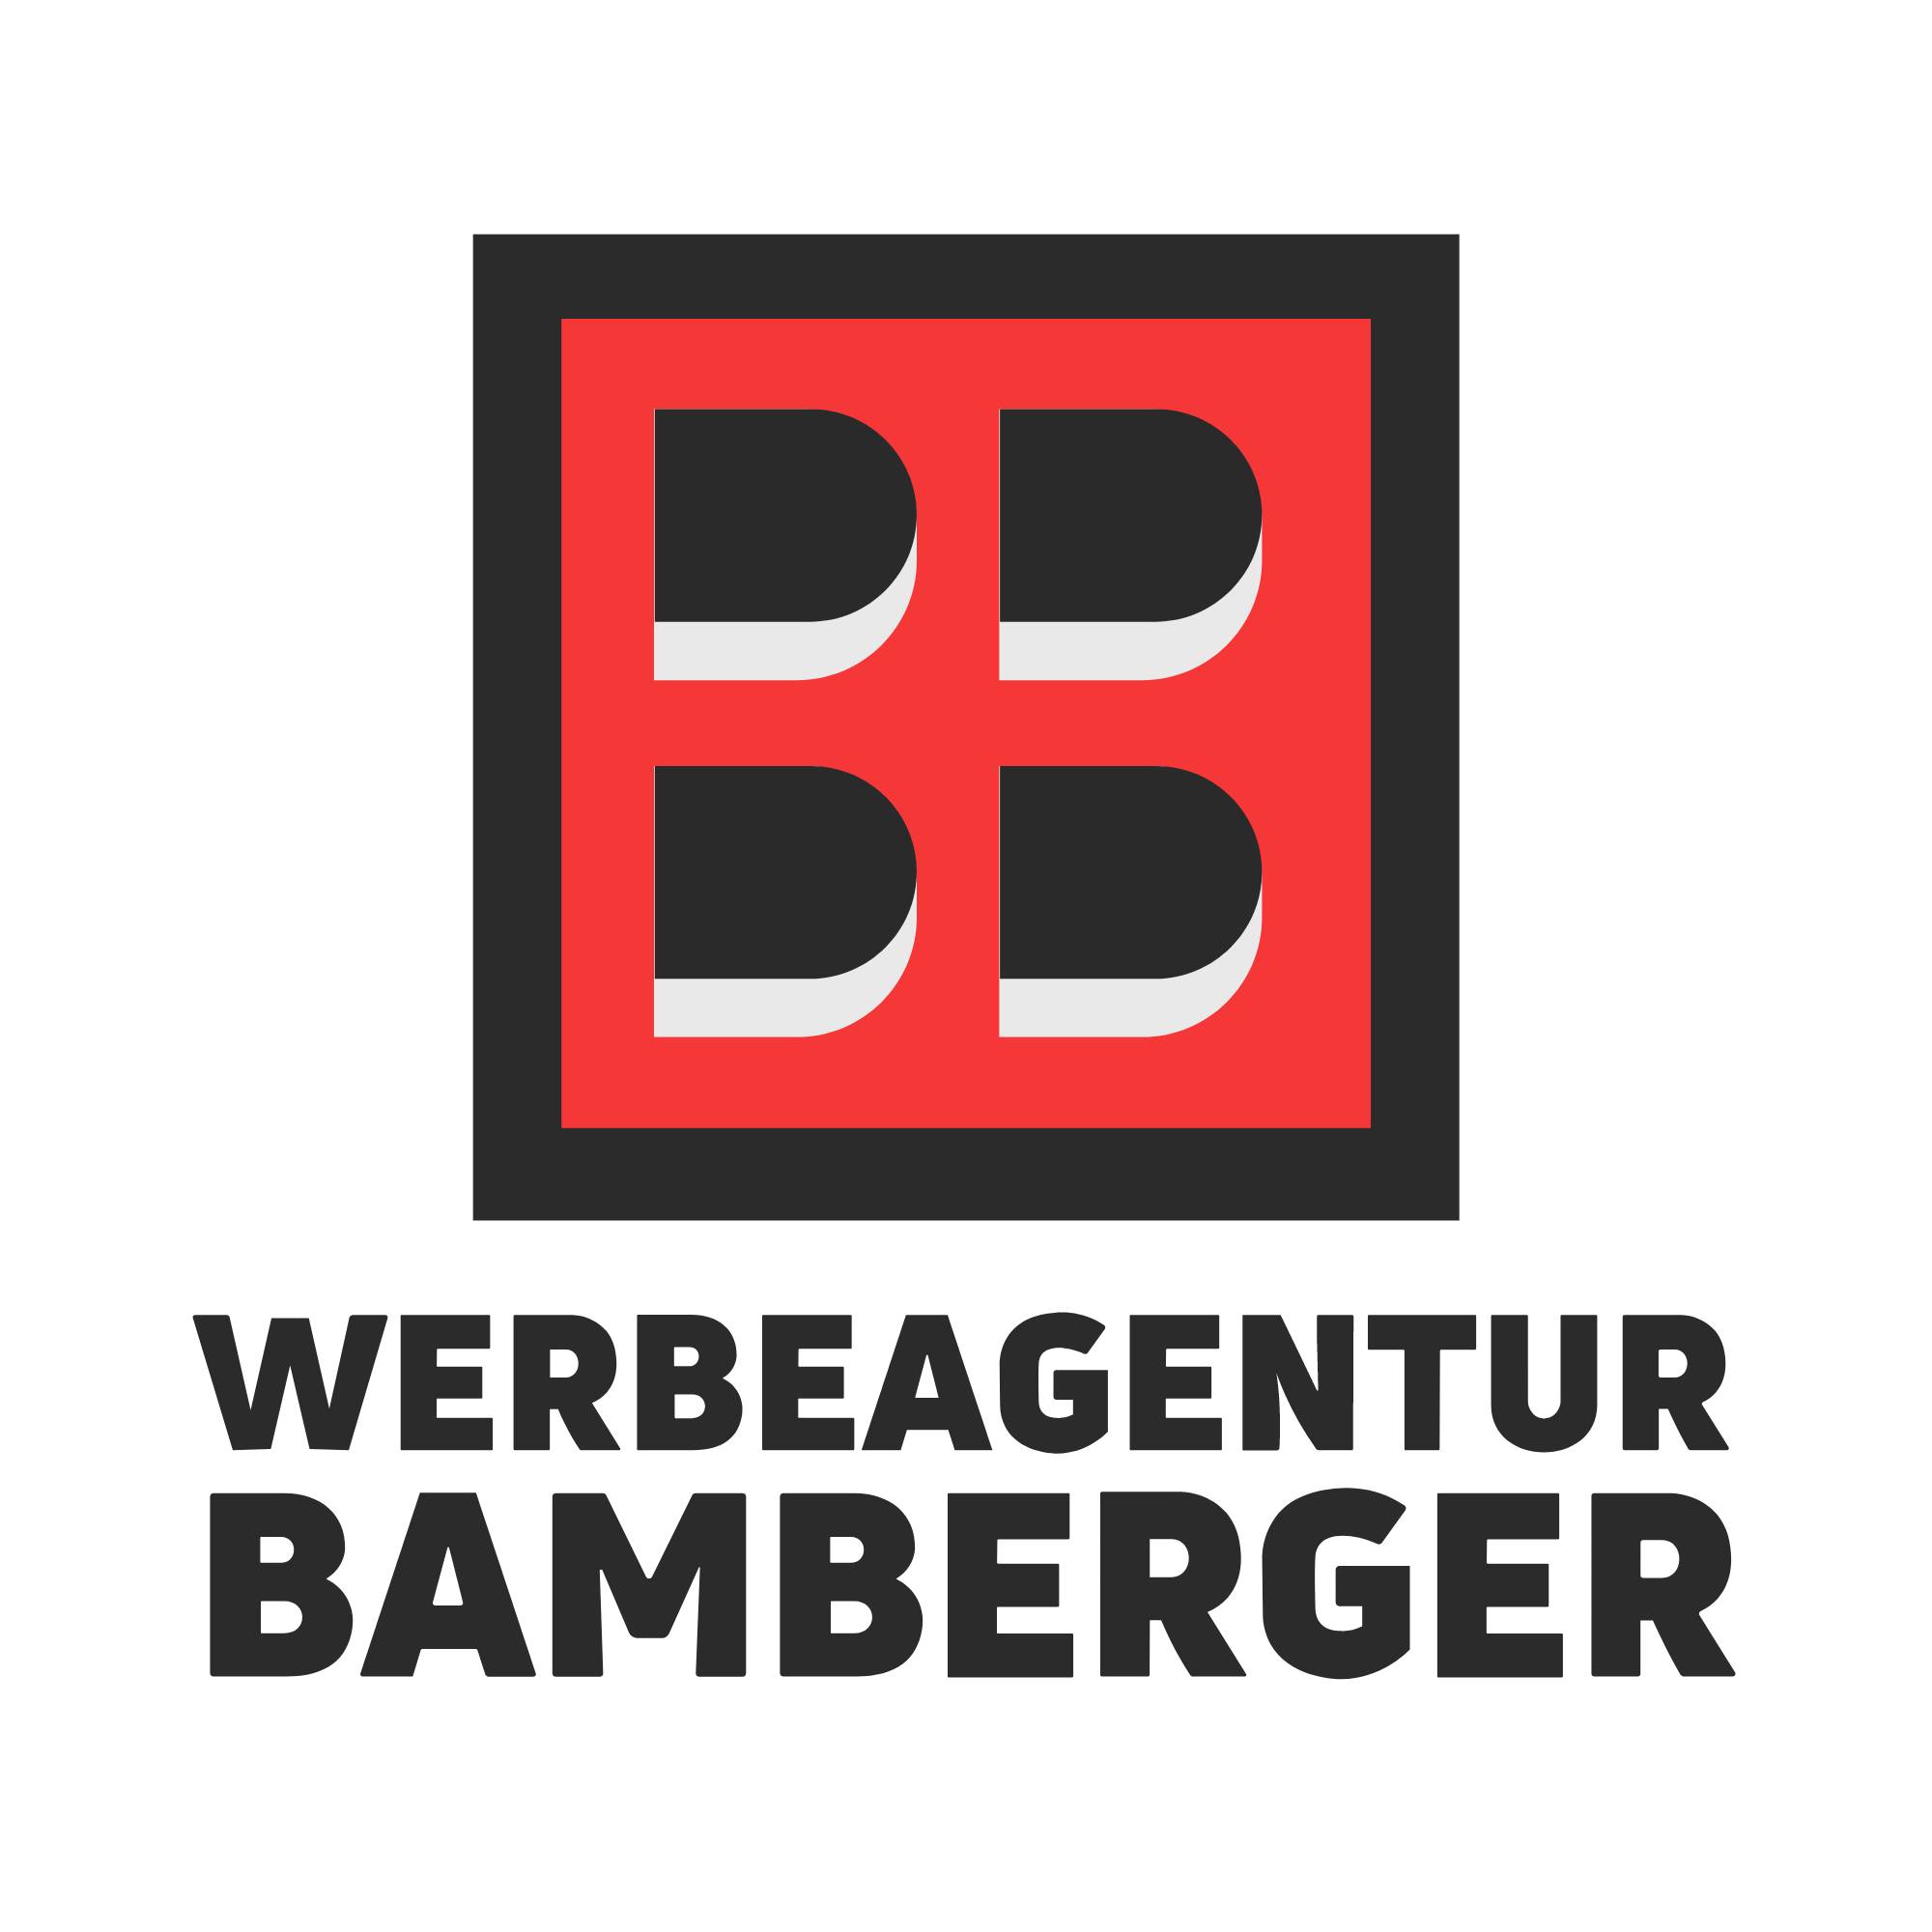 Werbeagentur Bamberger Braunschweig | Local SEO | SEO | Webdesign